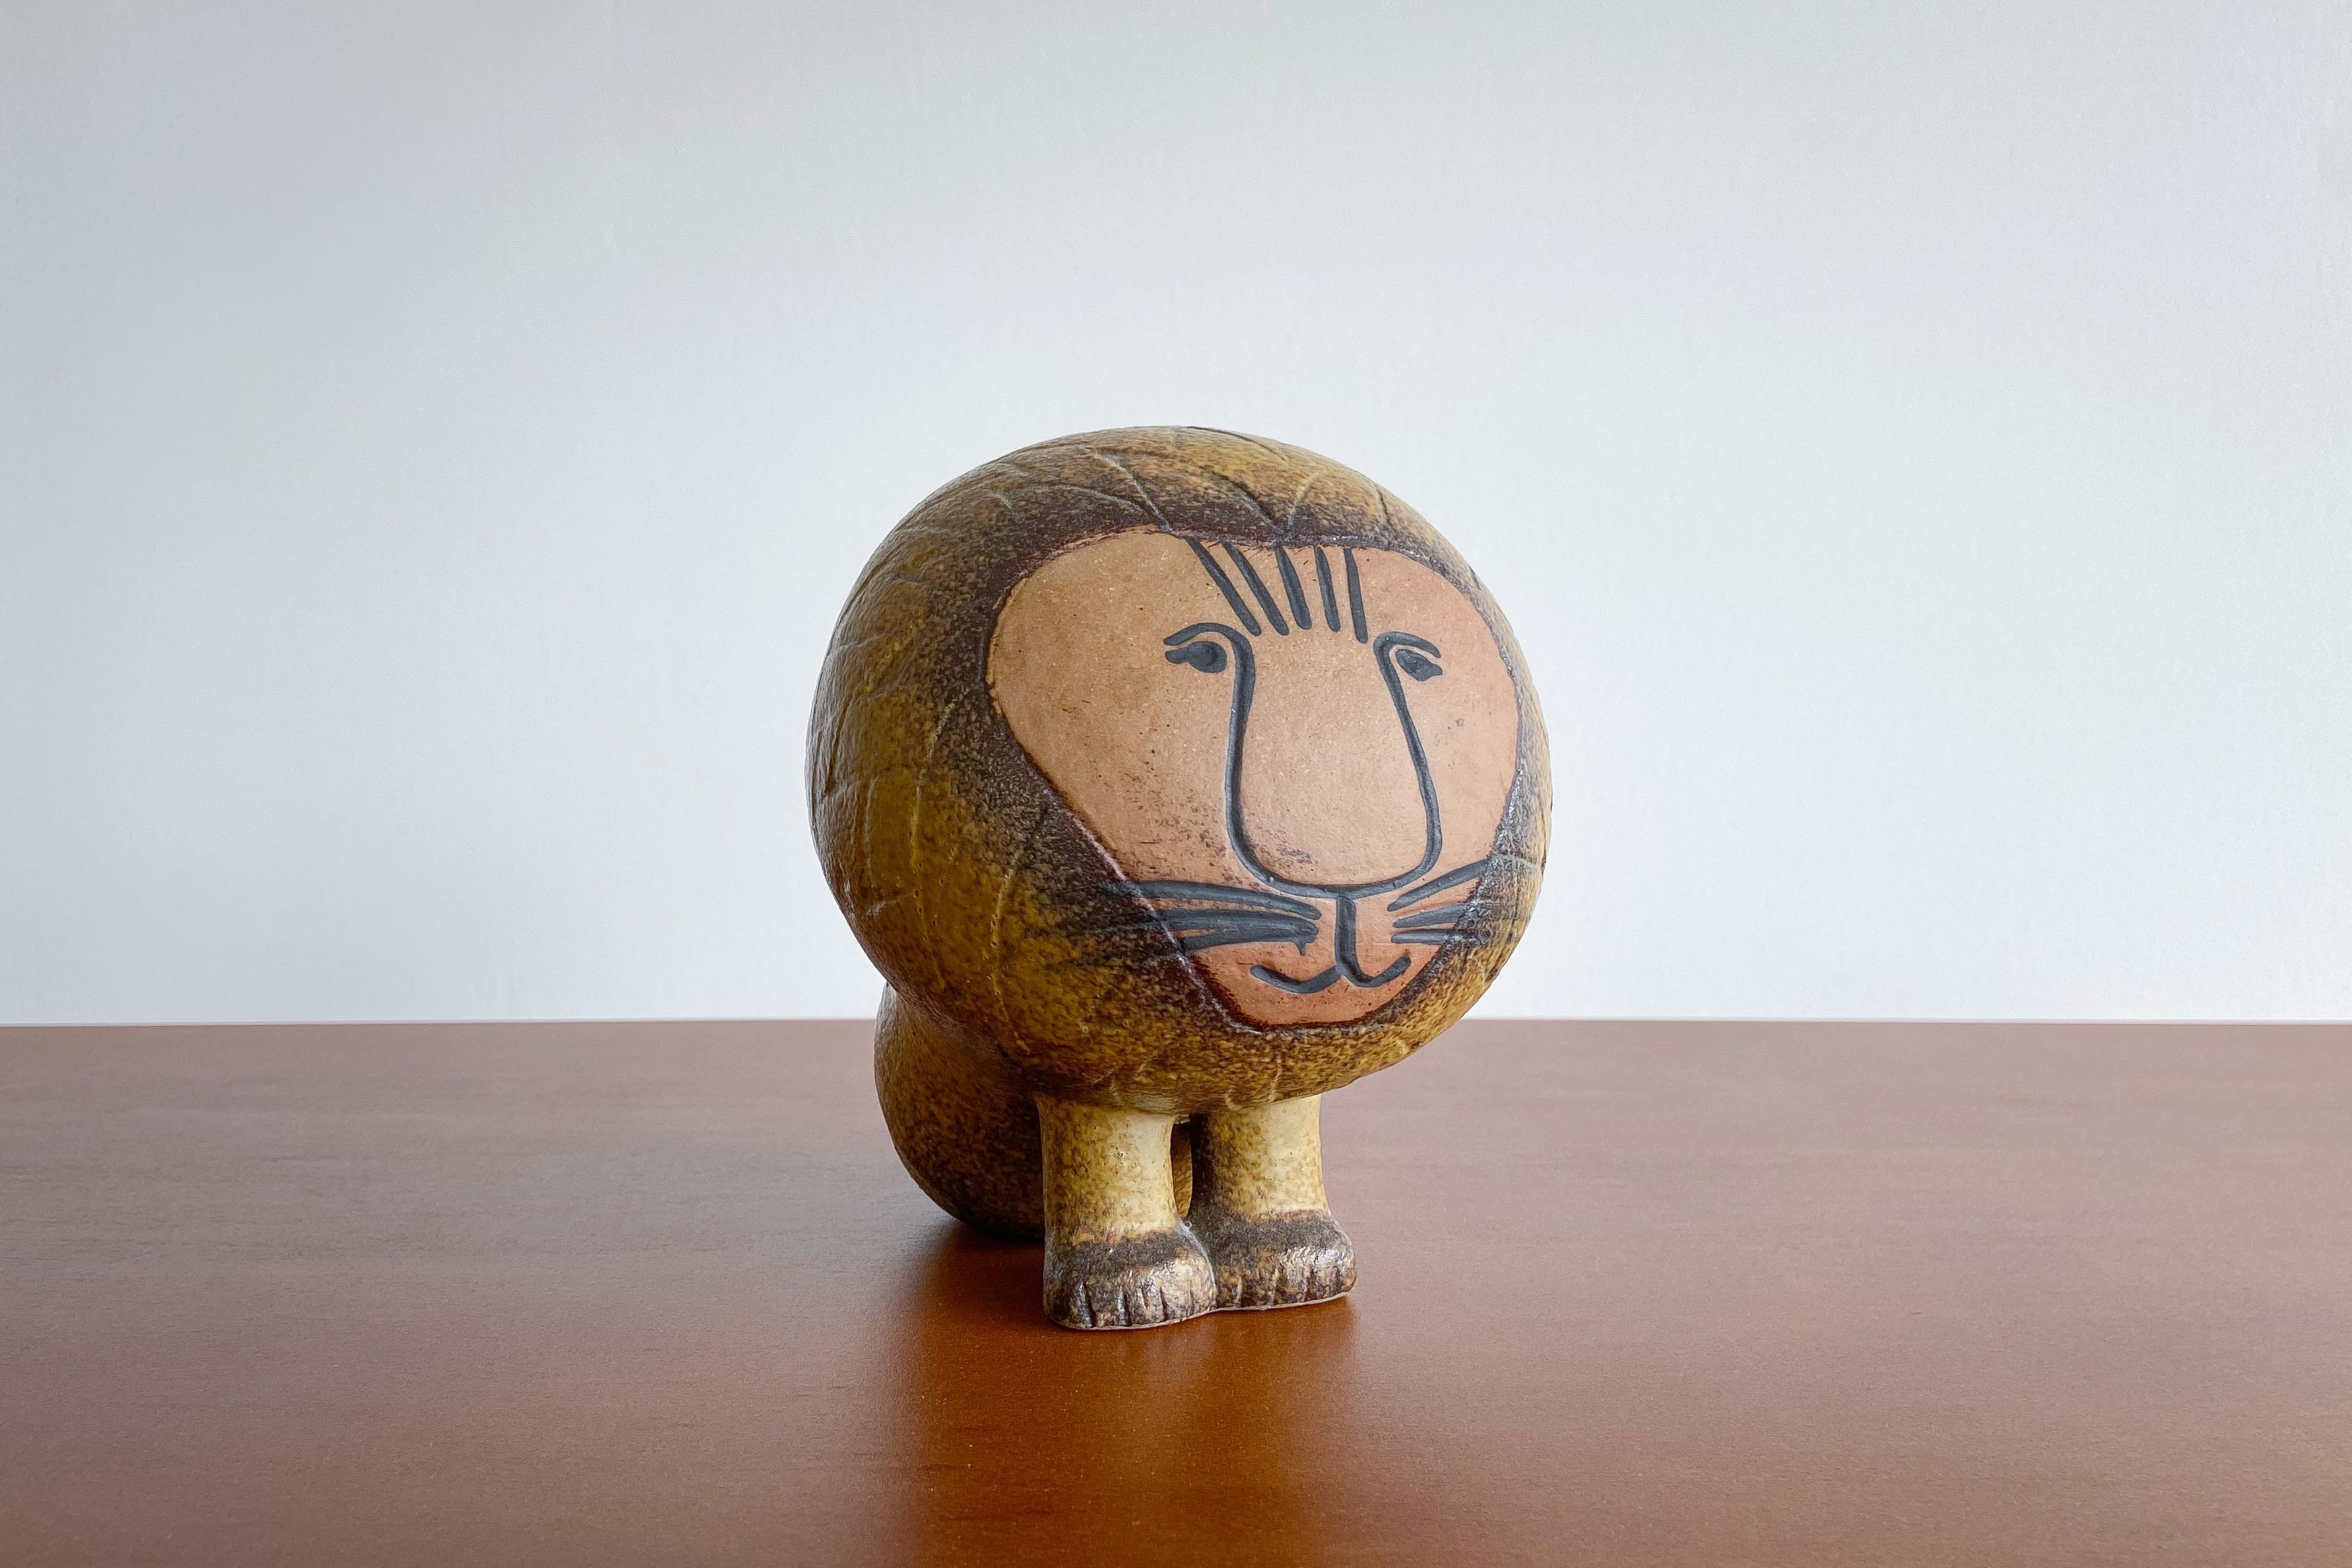 A fun and whimsical ceramic lion by famed ceramic artist Lisa Larsen for Gustavsberg's 